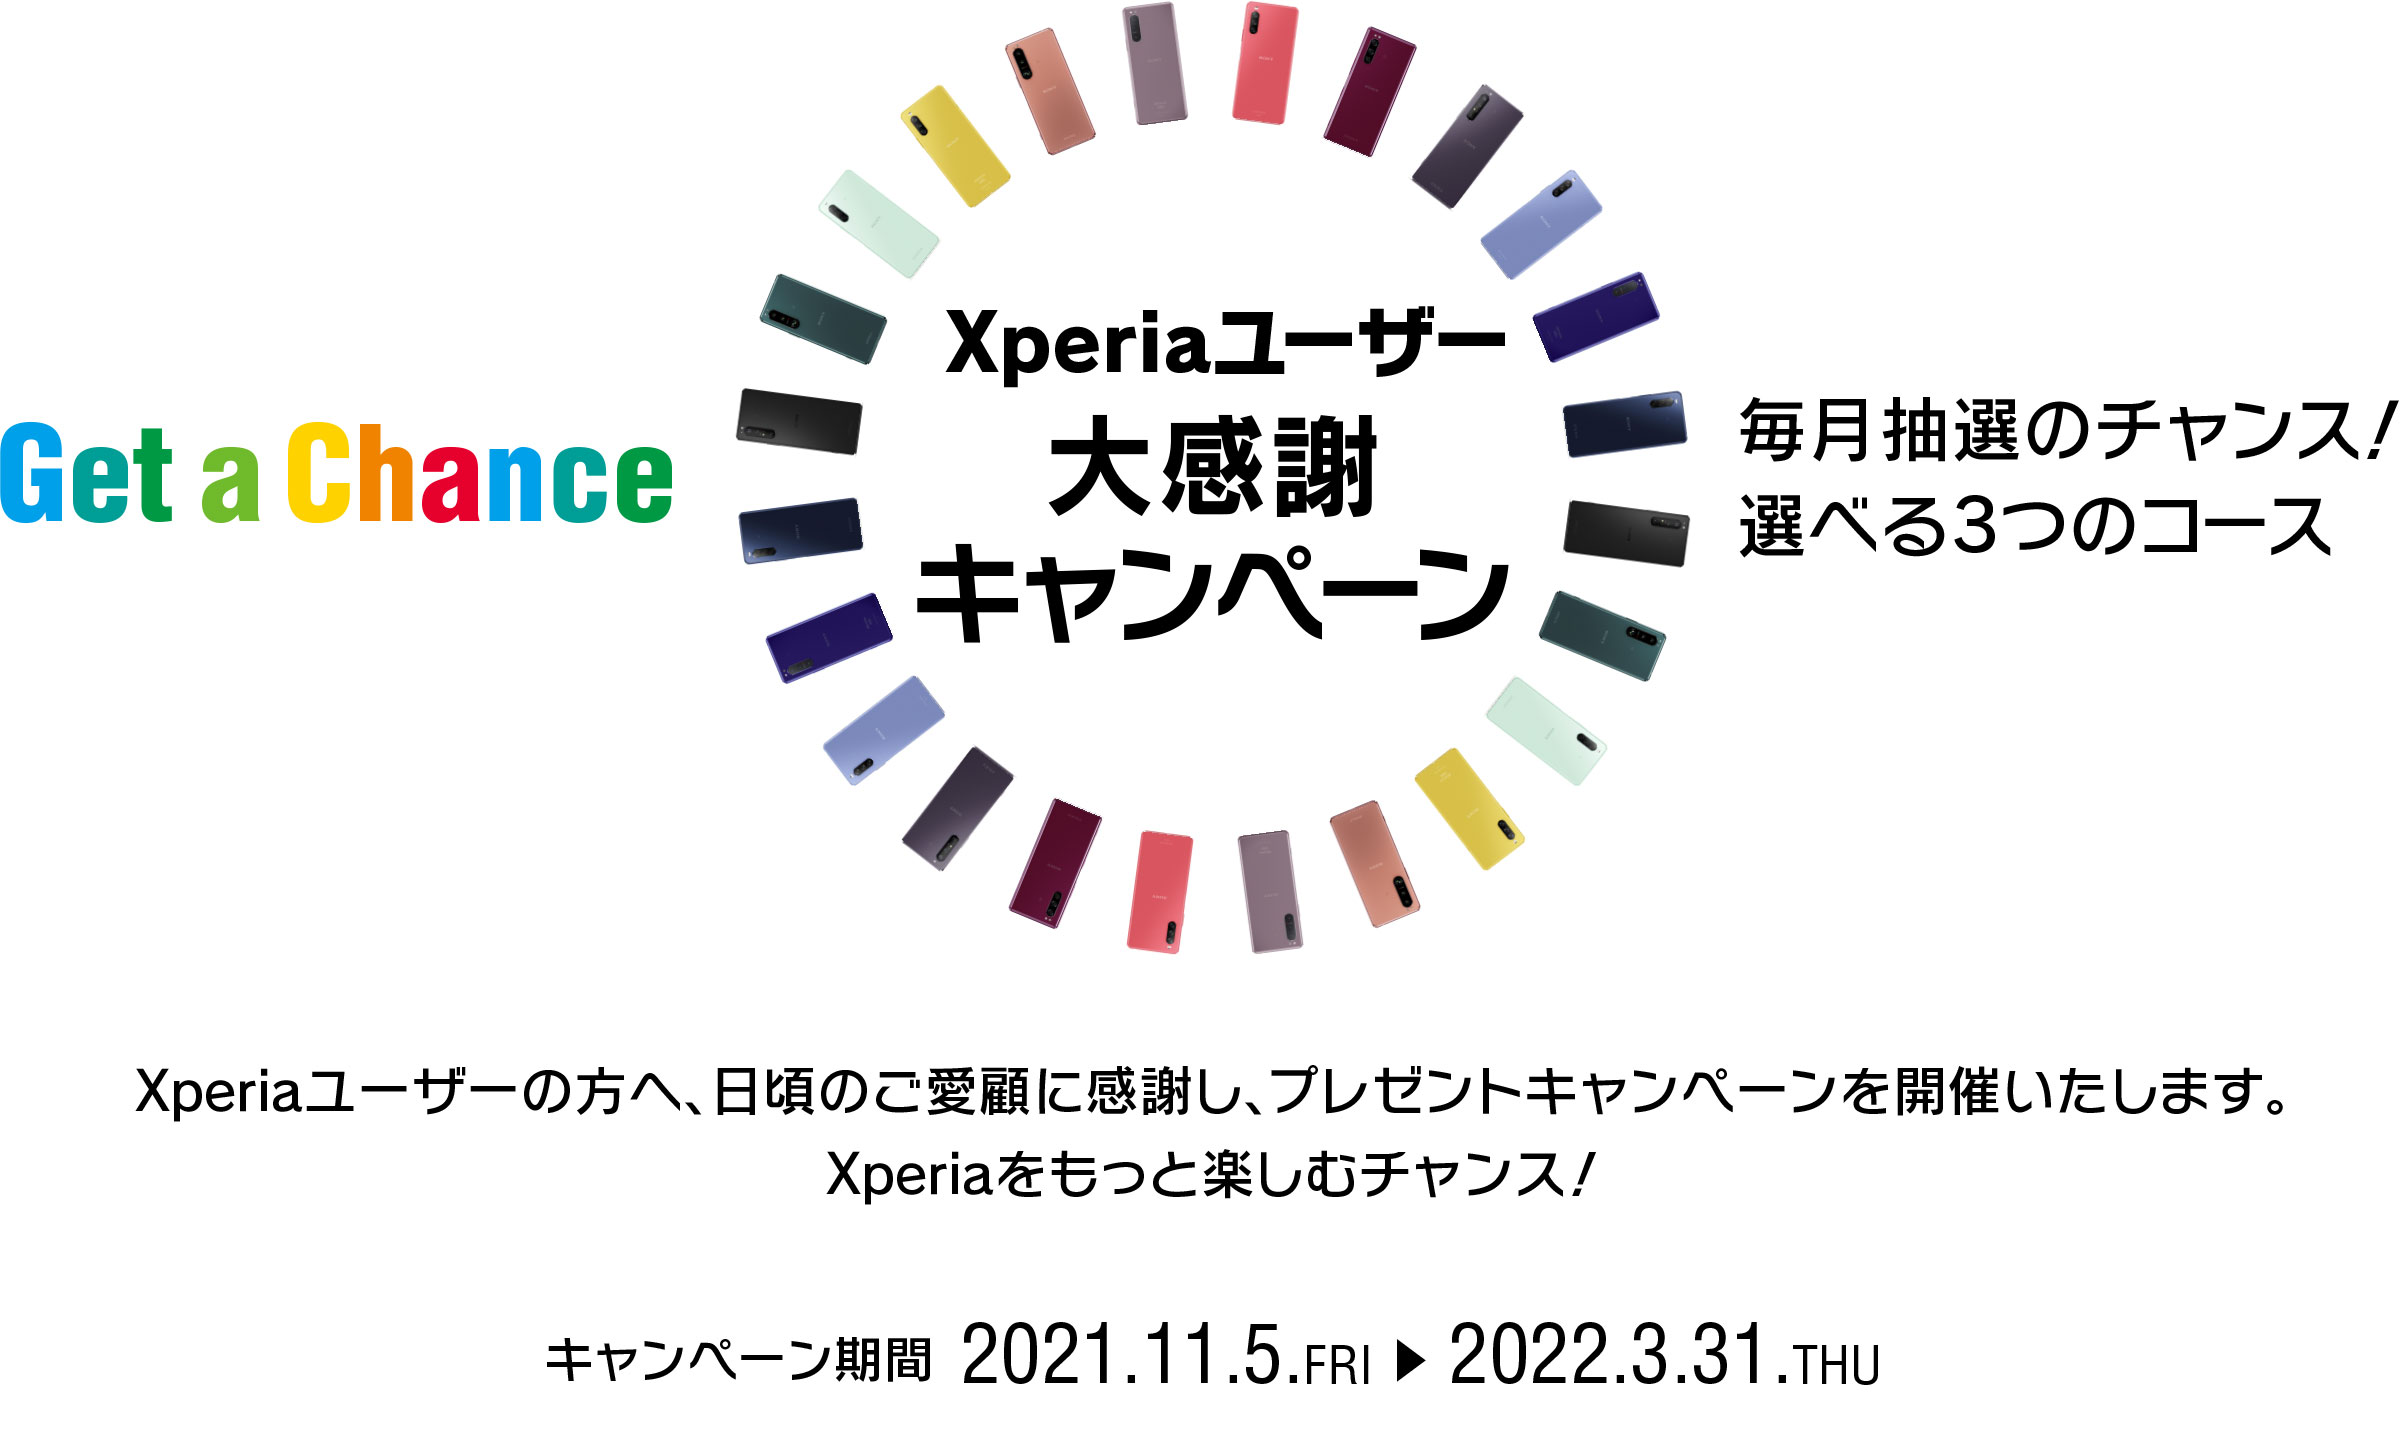 Xperiaユーザー大感謝キャンペーン Get a Chance 毎月抽選のチャンス！ 選べる3つのコース！ Xperiaユーザーの方へ、日頃のご愛顧に感謝し、プレゼントキャンペーンを開催！ Xperiaをもっと楽しむチャンス！！ 応募期間第１弾 2021.11.5.FRI → 2021.11.30.TUE 23:59 キャンペーン期間 2021.11.5.FRI → 2022.3.31.THU